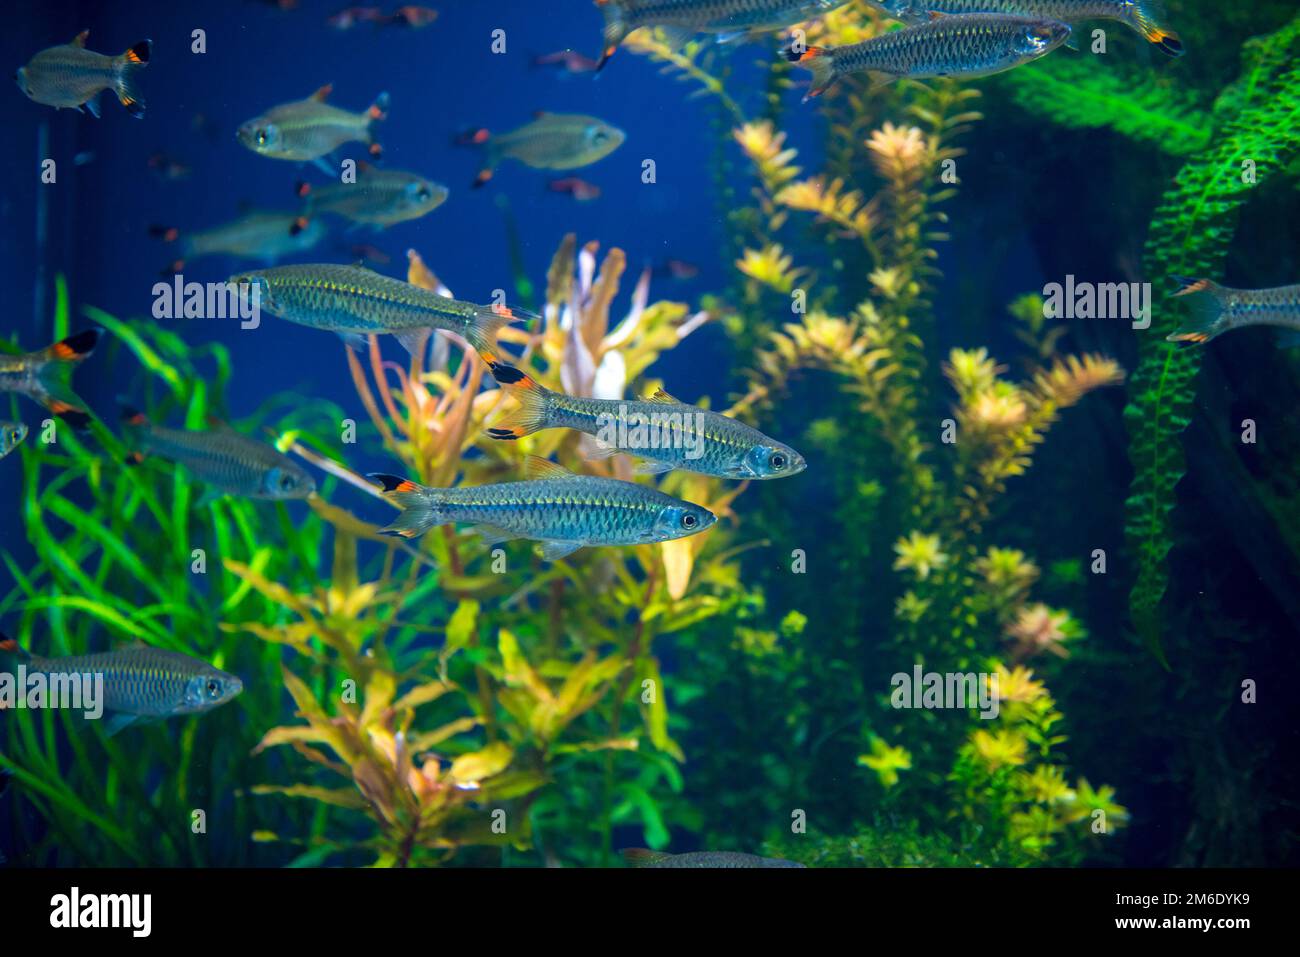 Fishes in aquarium Stock Photo